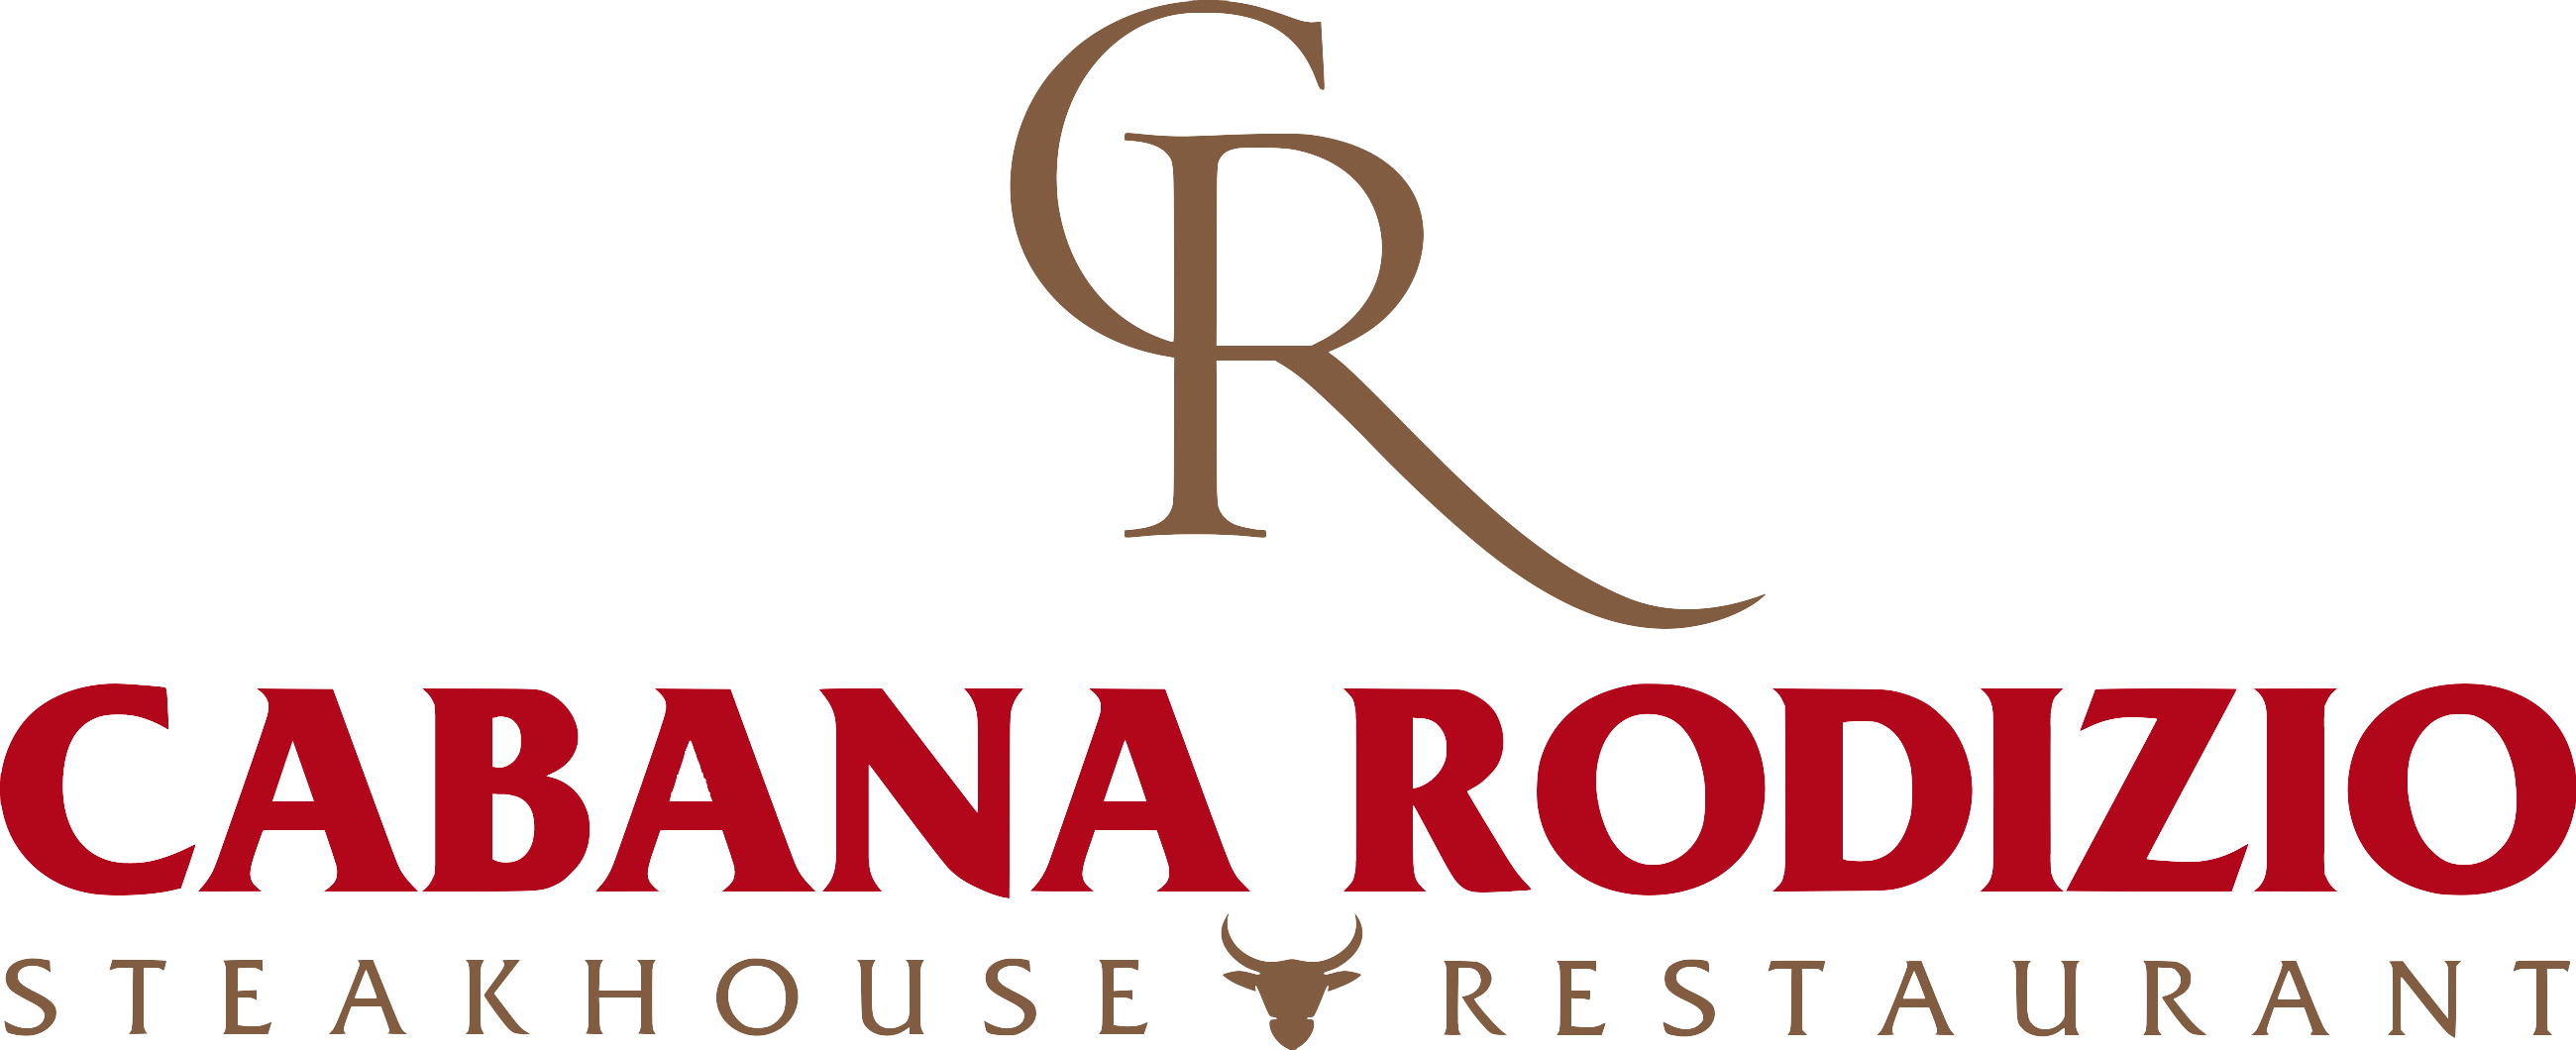 Cabana Rodizio Steakhouse